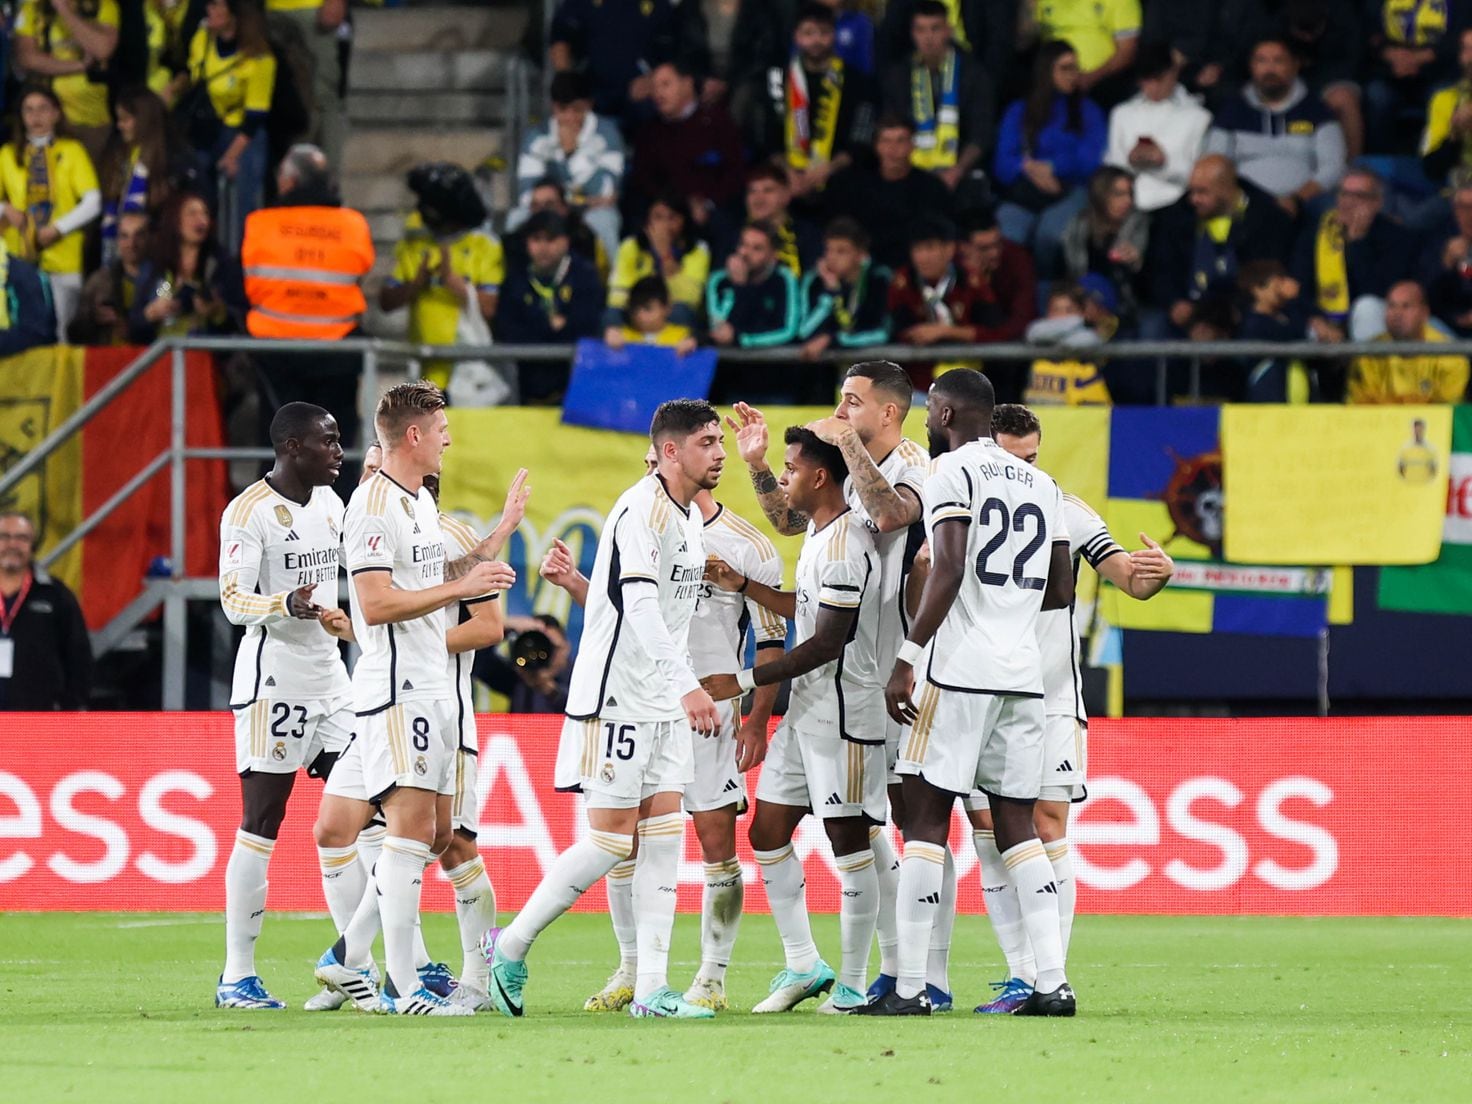 Jogo do Fenerbahçe: A história de um clube lendário